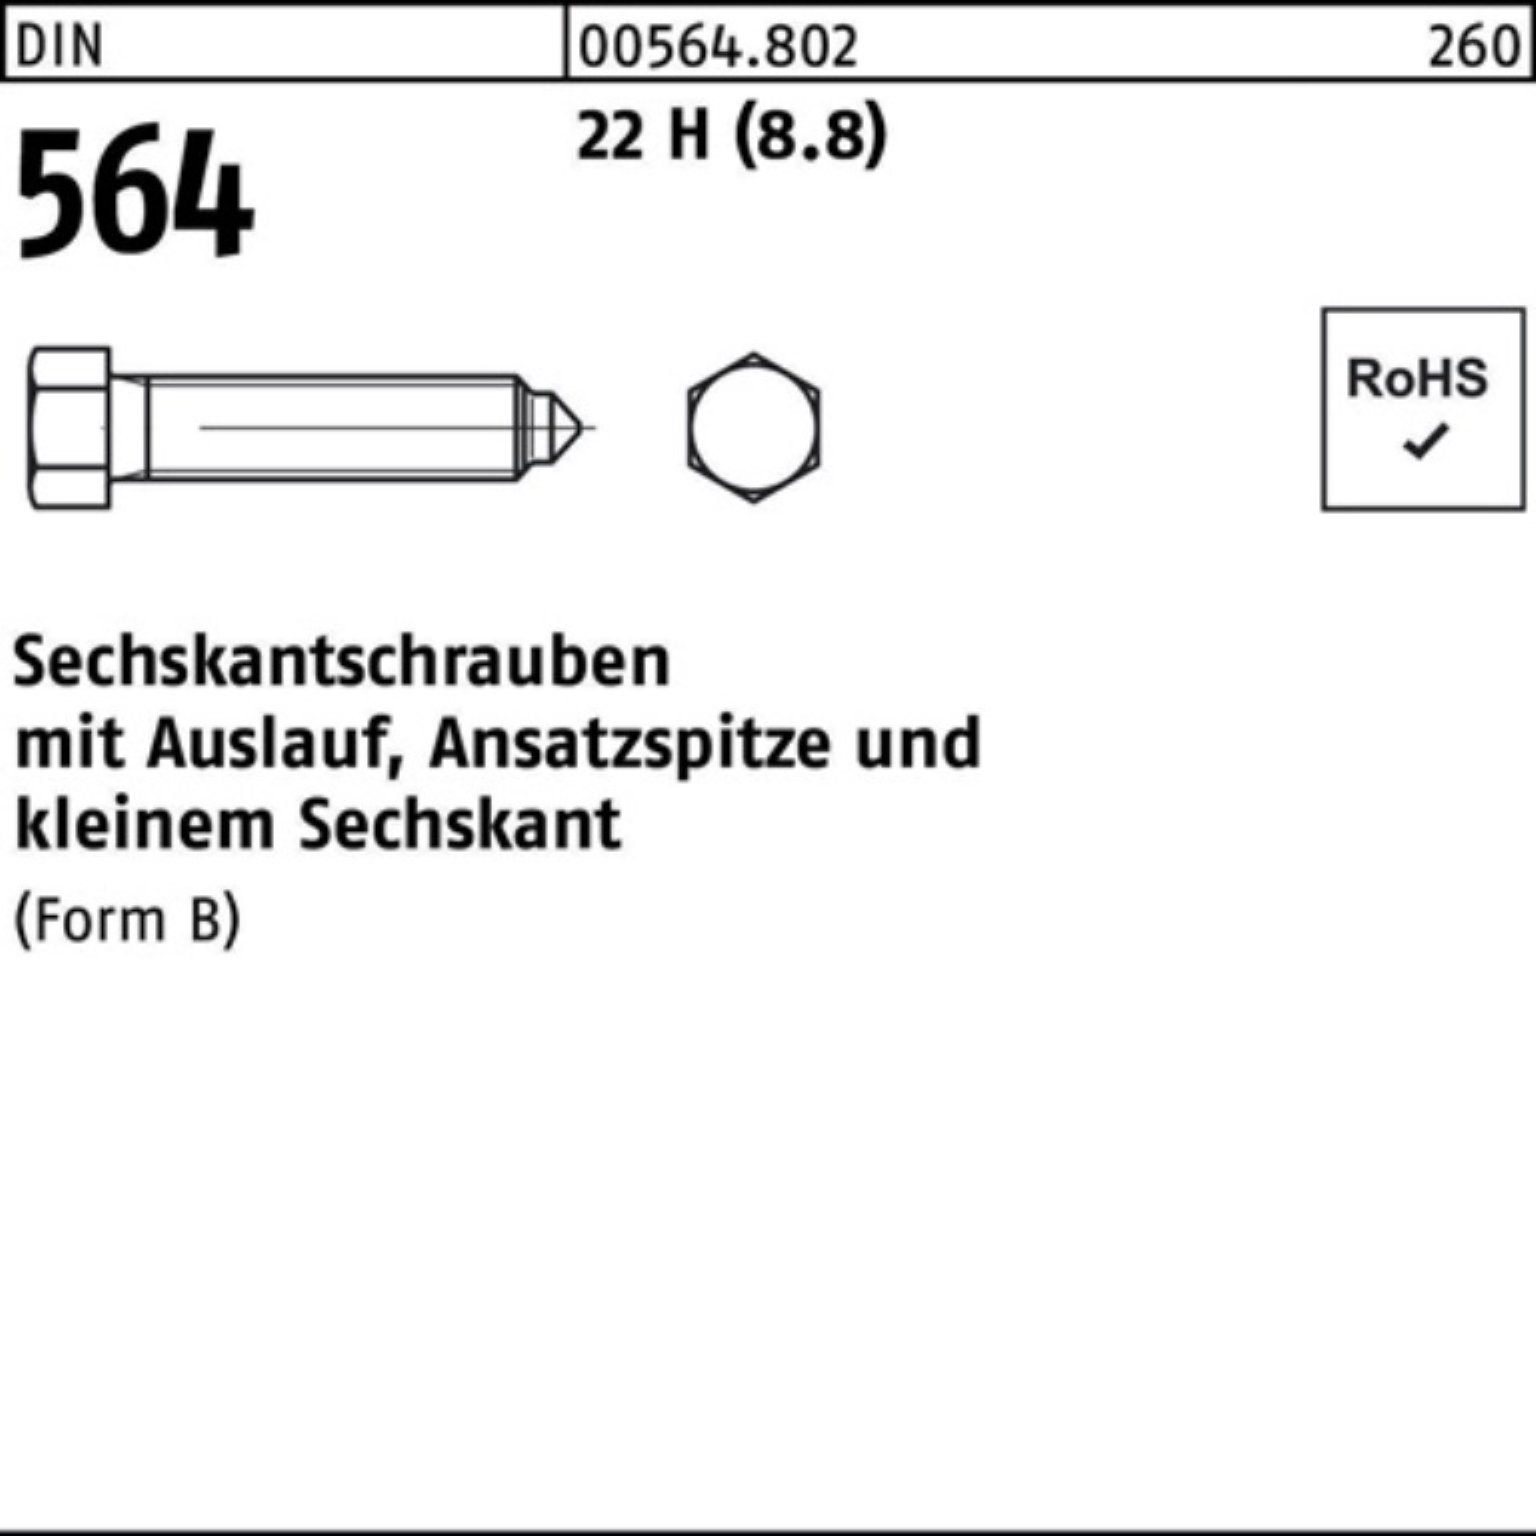 Reyher Sechskantschraube 100er Pack Sechskantschraube DIN 564 Ansatzspitze/Auslauf BM 16x 40 22